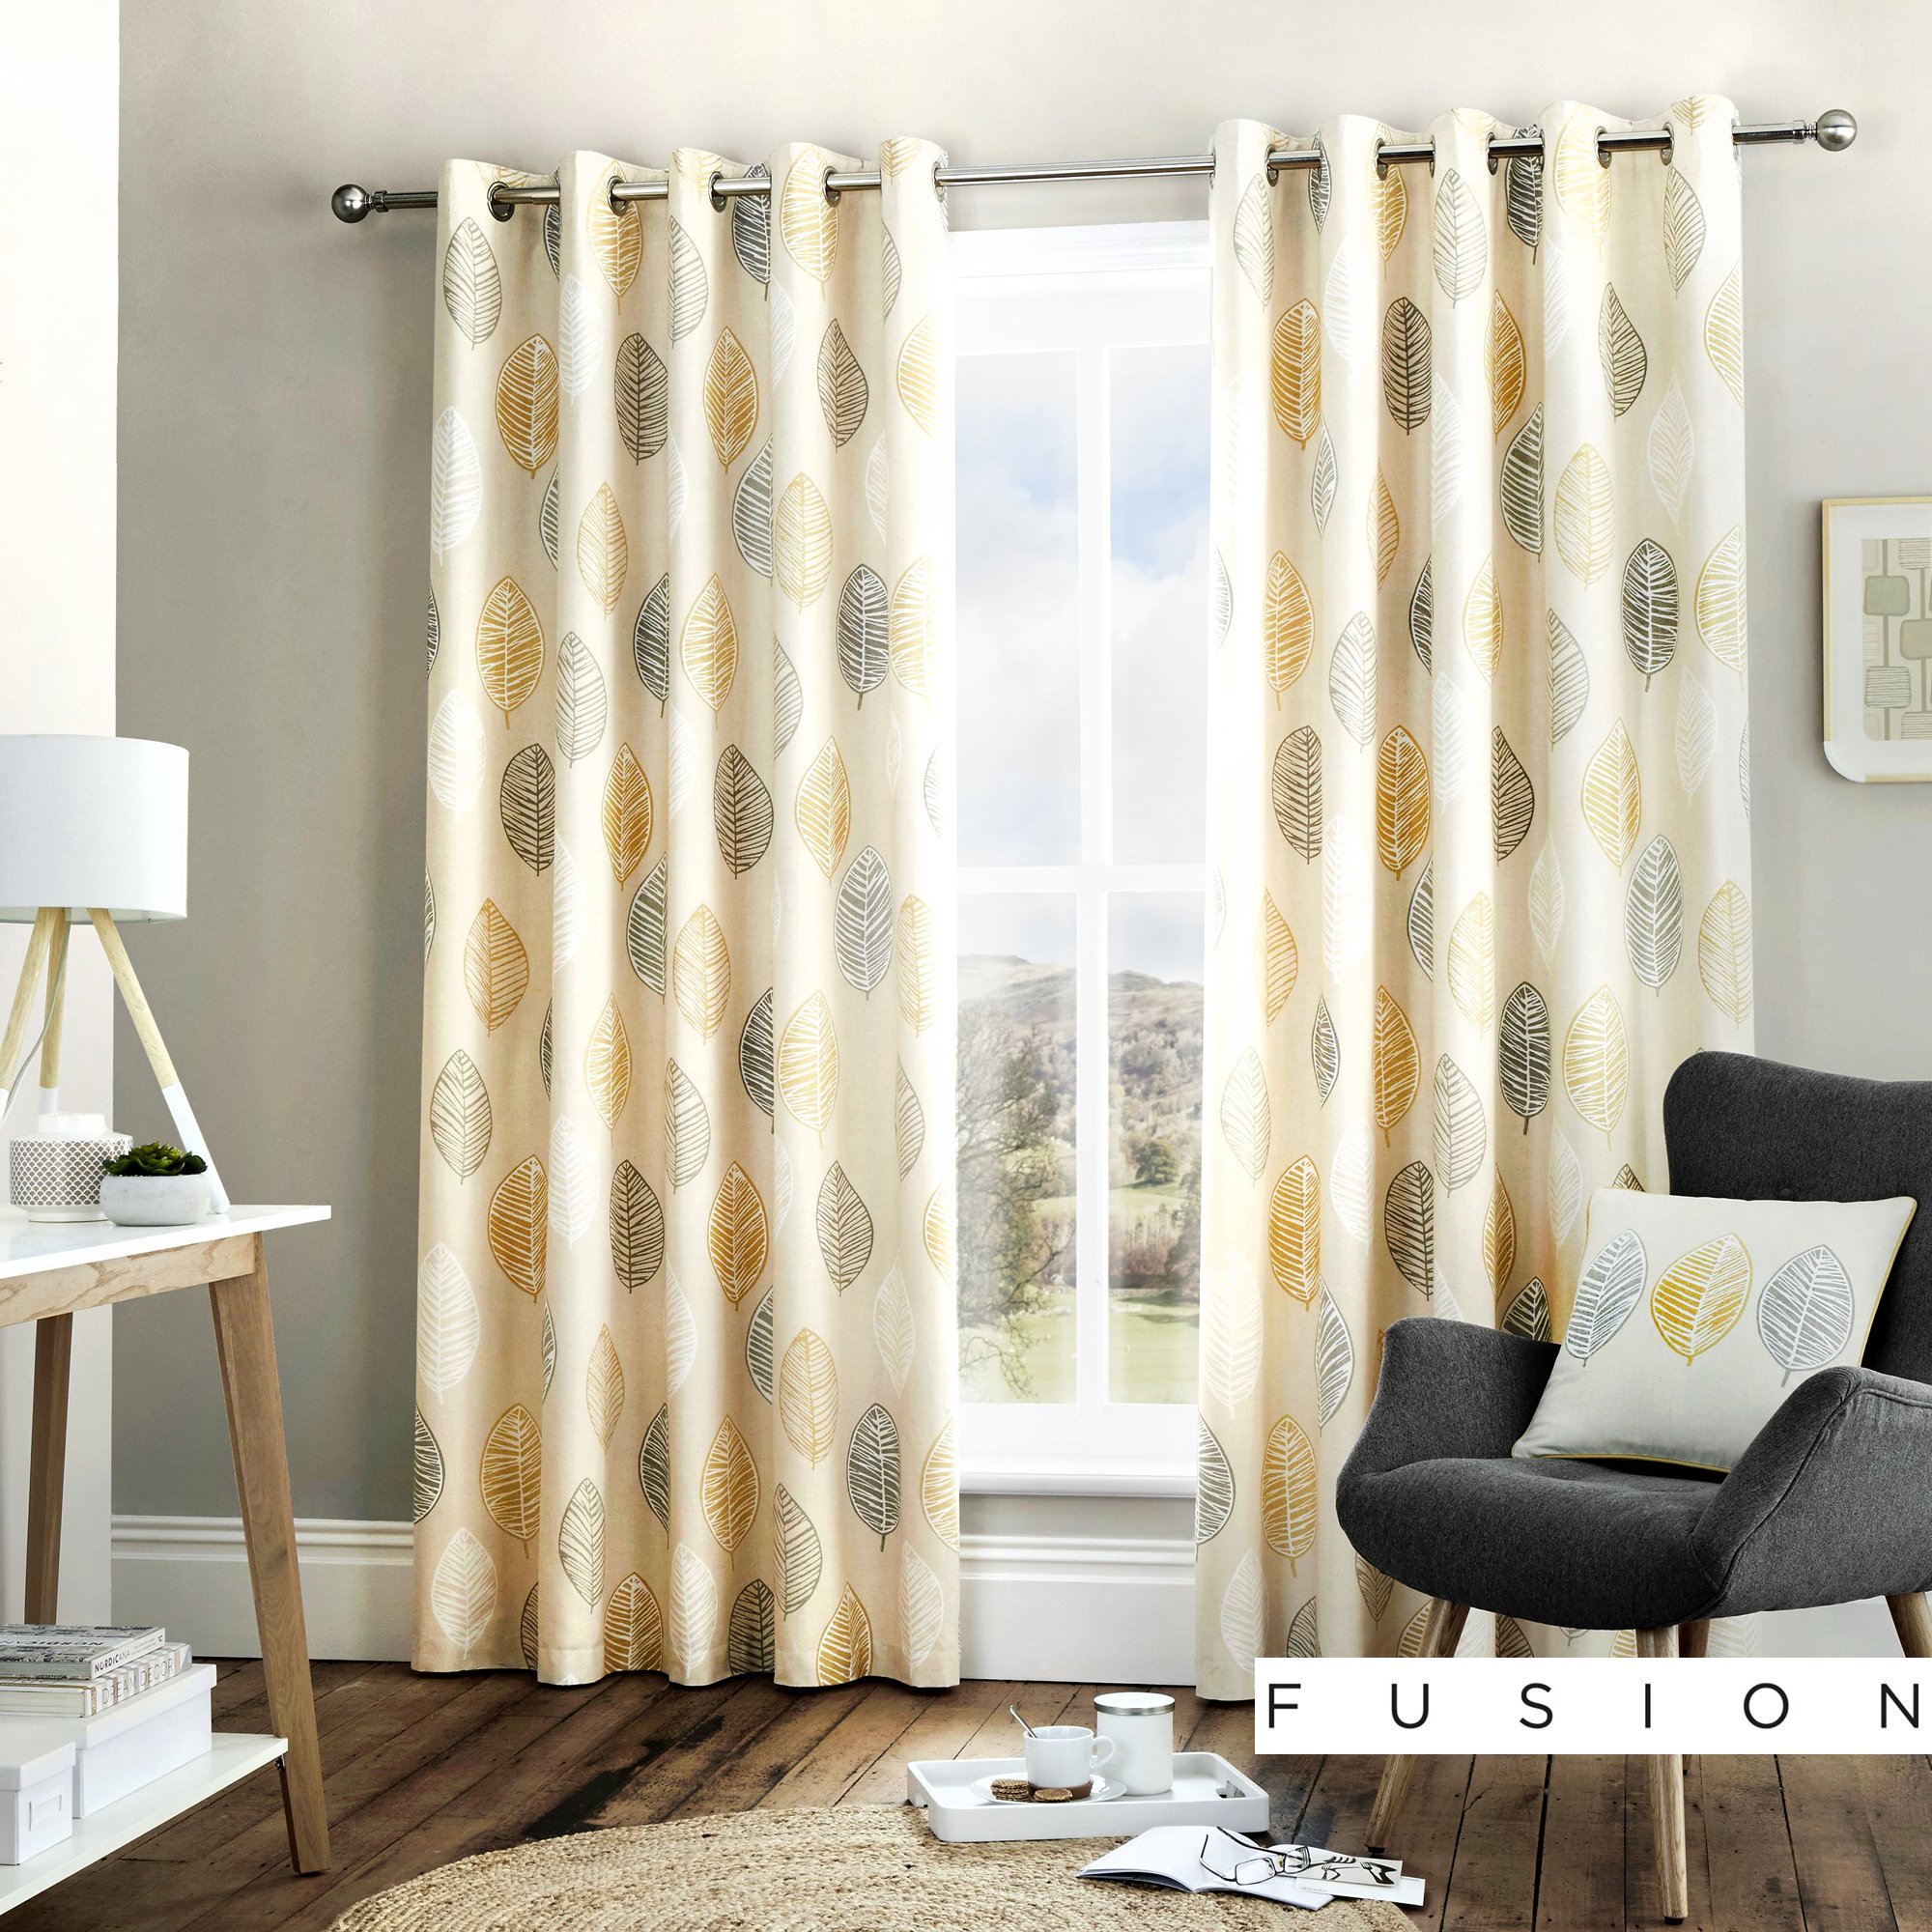 Fusion Home Furnishings Skandi Leaf Vorhänge mit Ösen, 1 Paar, 100% Baumwolle, Ocker, 229 x 229cm